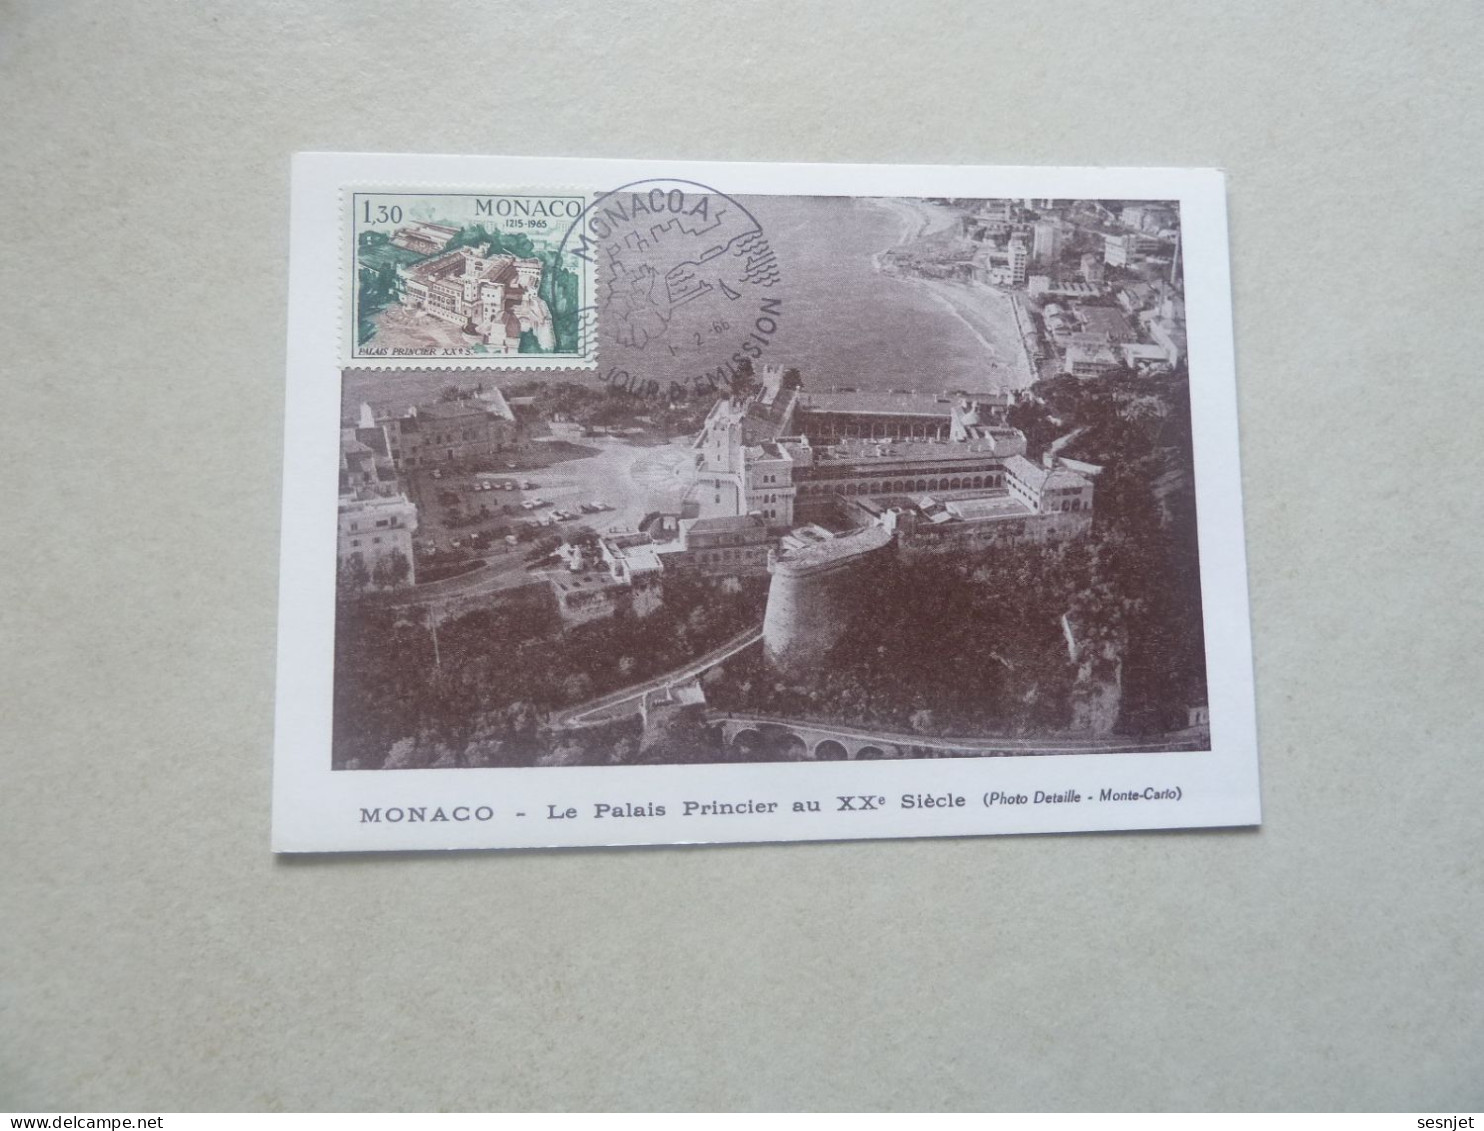 Monaco - Le Palais Au 17ème Siècle - 1f.30 - Yt 682 - Carte Premier Jour D'Emission - Année 1966 - - Maximumkaarten